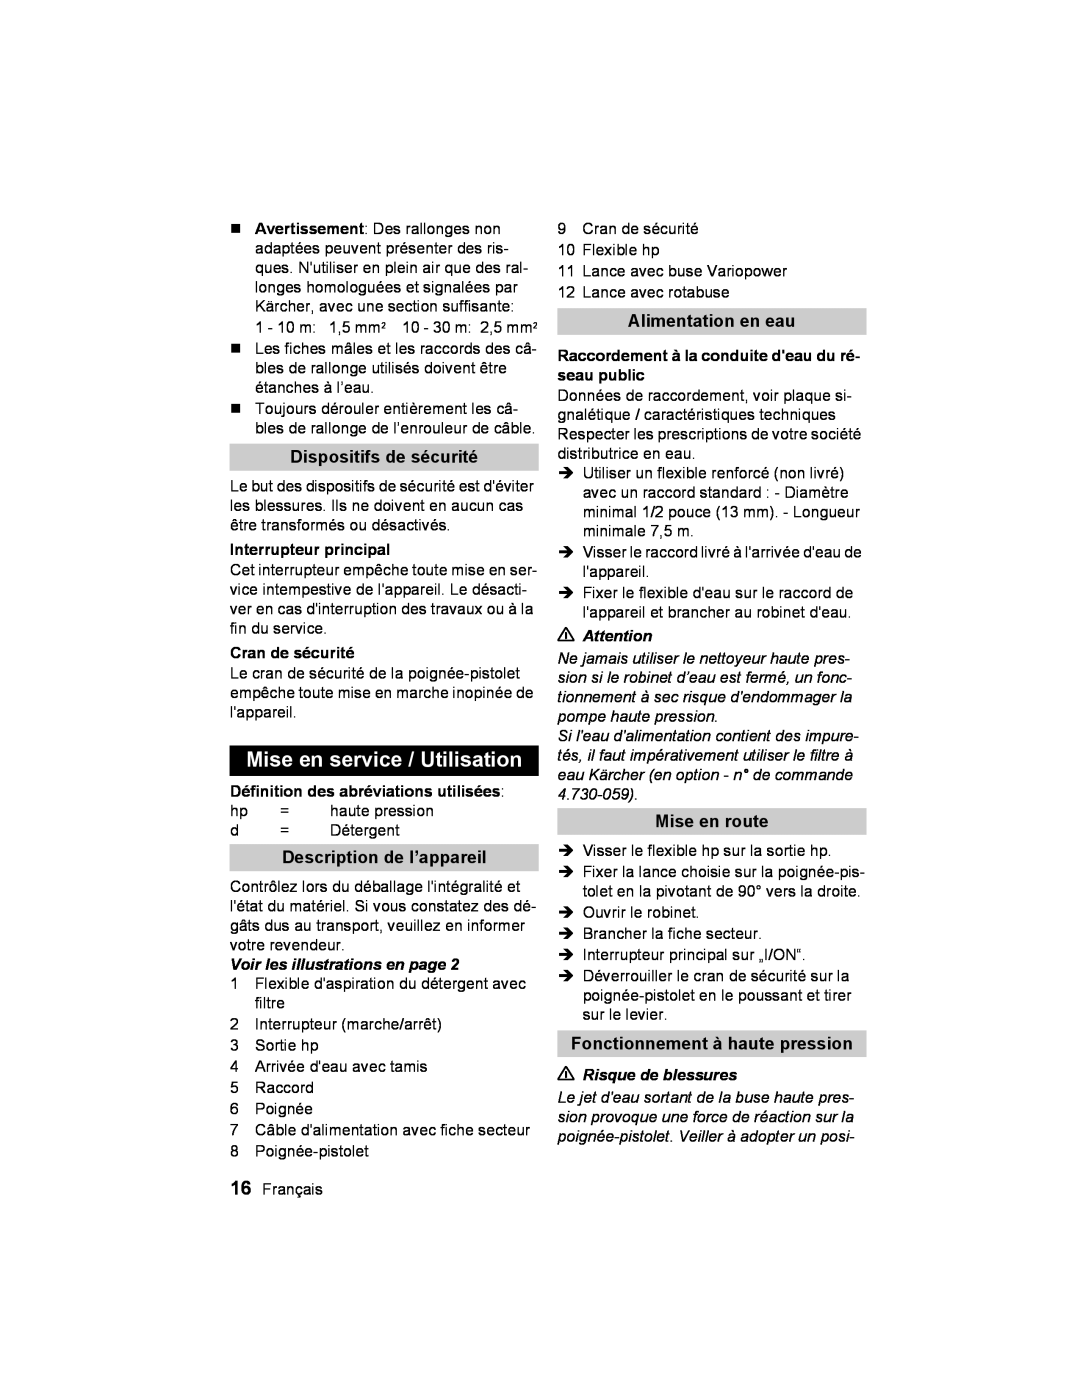 Karcher K2.93 manual Mise en service / Utilisation, Dispositifs de sécurité, Description de l’appareil, Alimentation en eau 